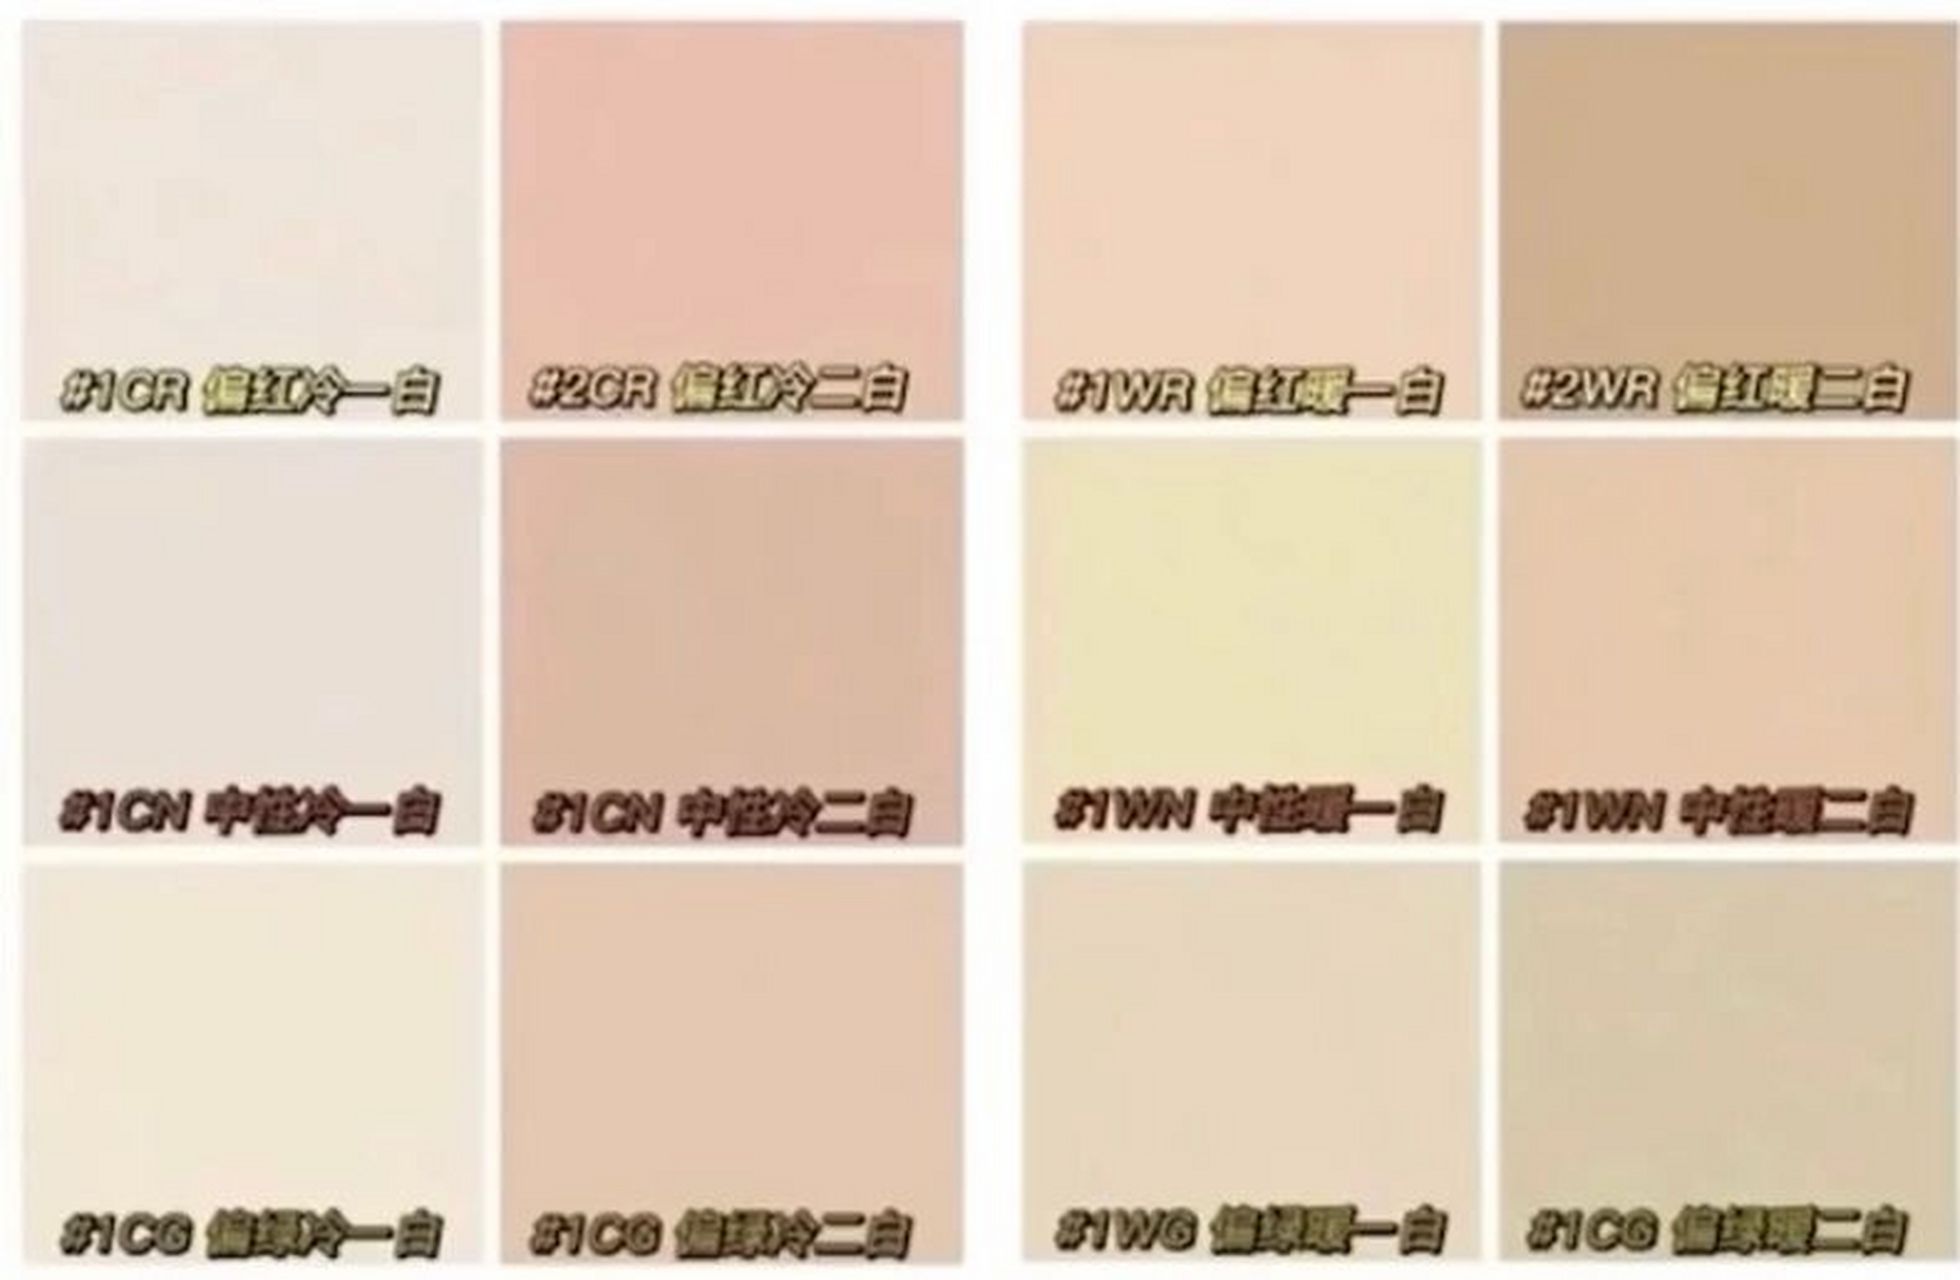 肤色色卡测试 肤色色卡测试:偏红冷二白(粉二白) 使用粉底液:雅诗兰黛